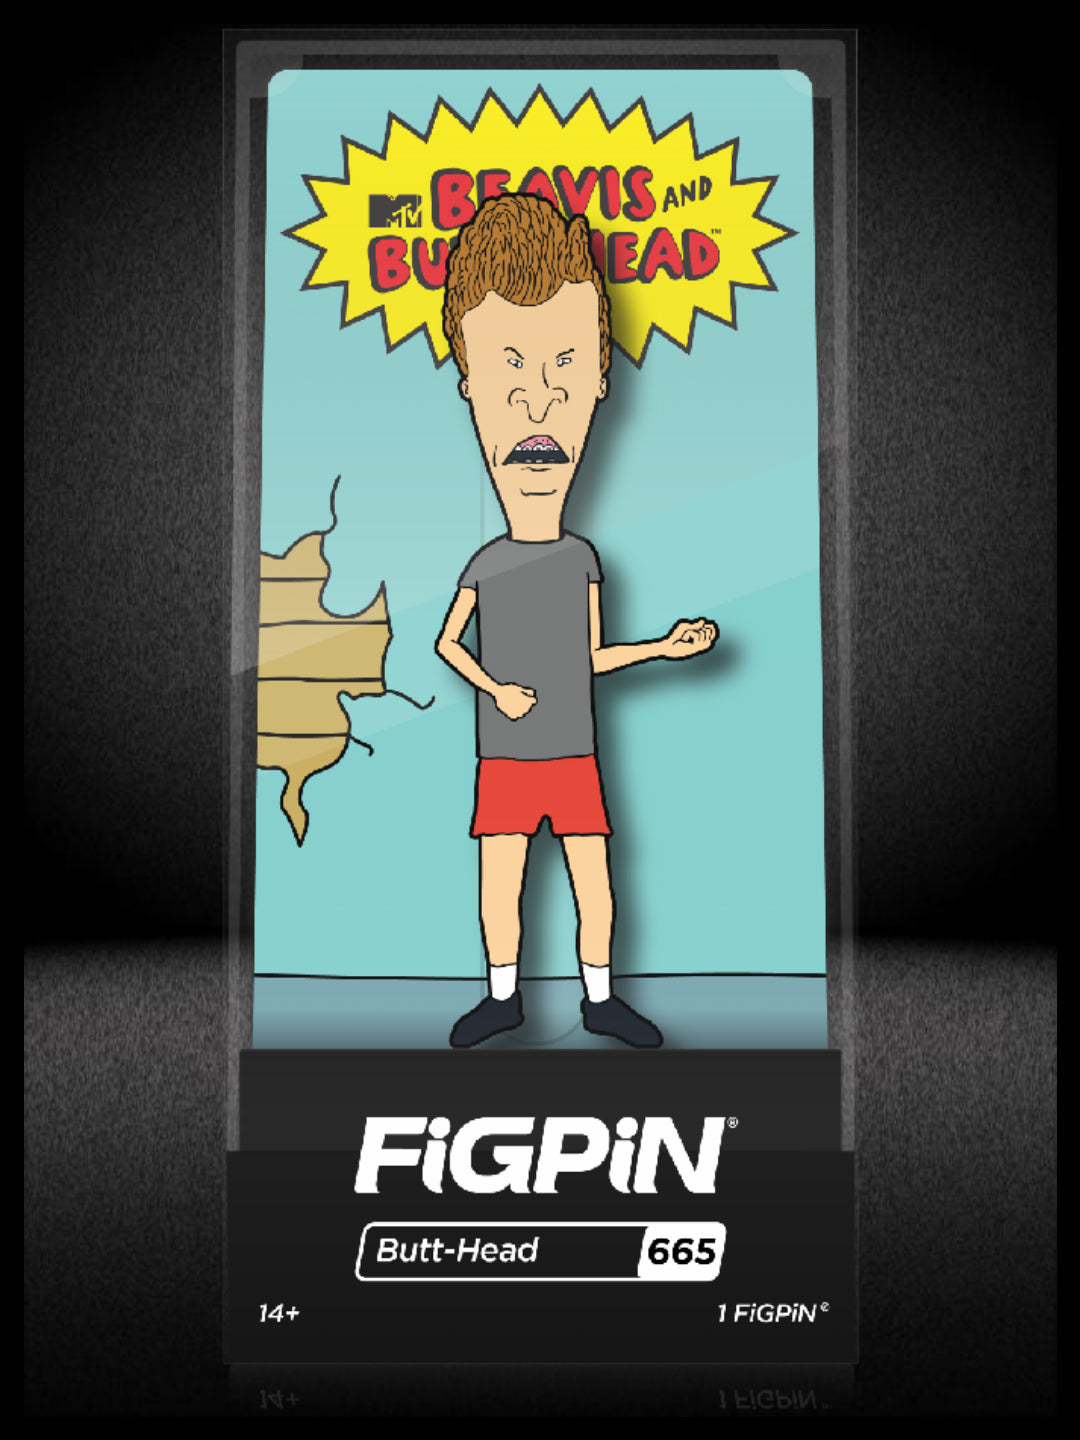 FiGPiN MTV Beavis and Butt-Head